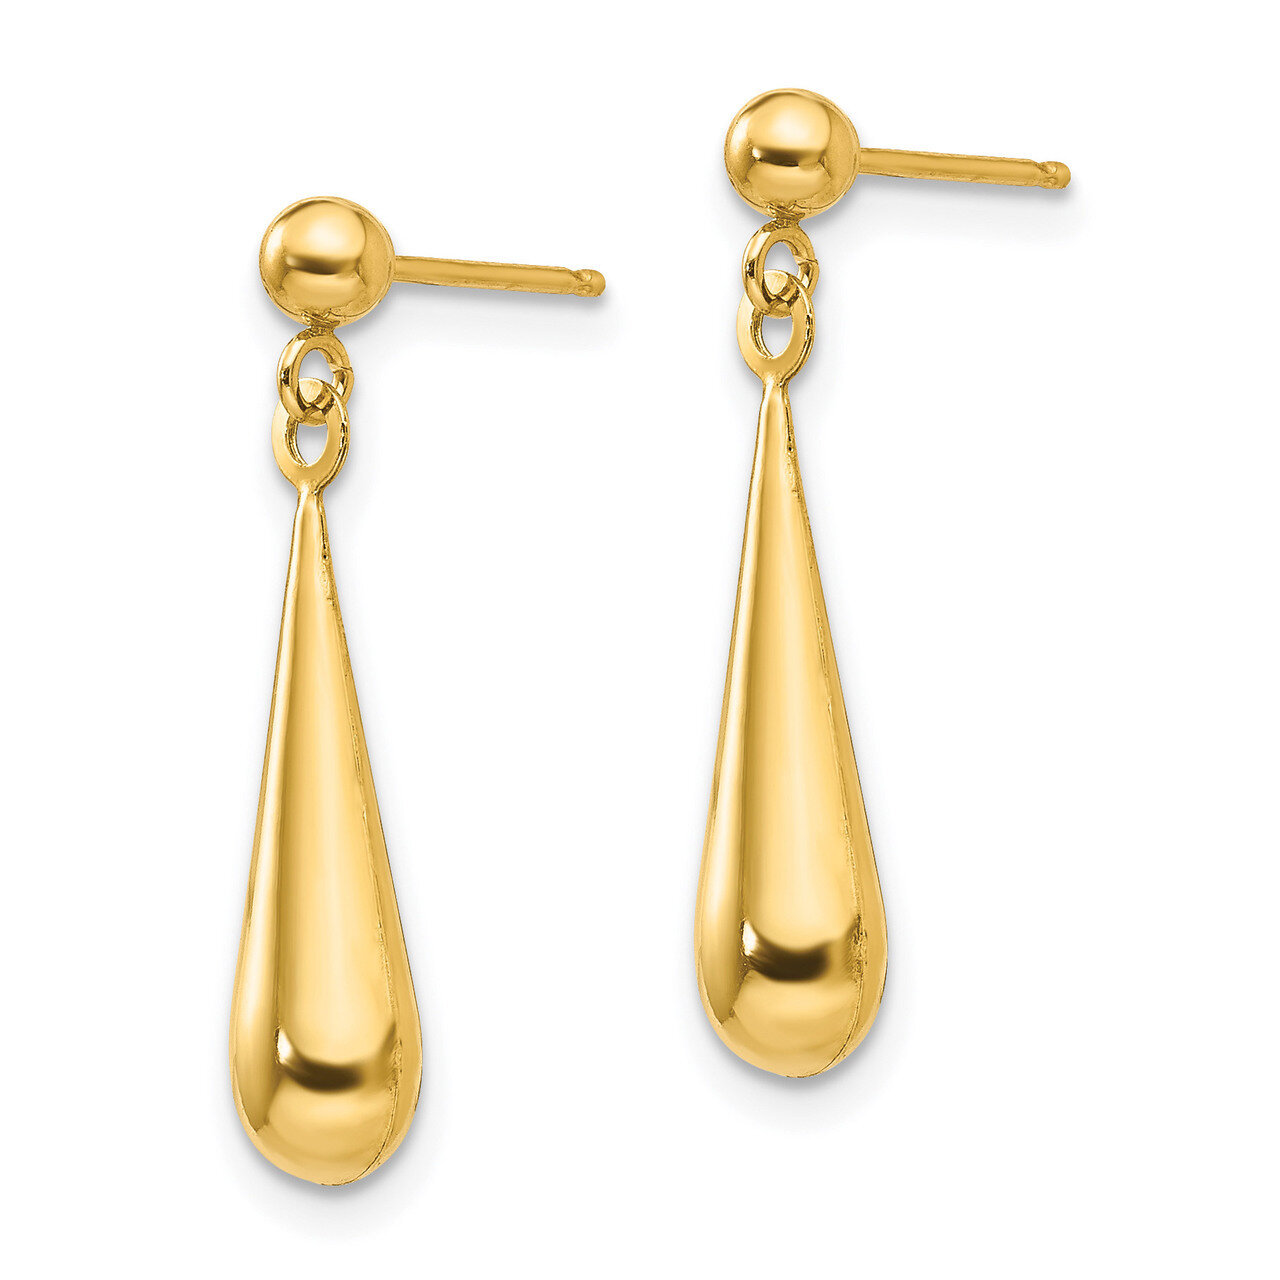 Tear Drop Dangle Earrings - 14k Gold SE712